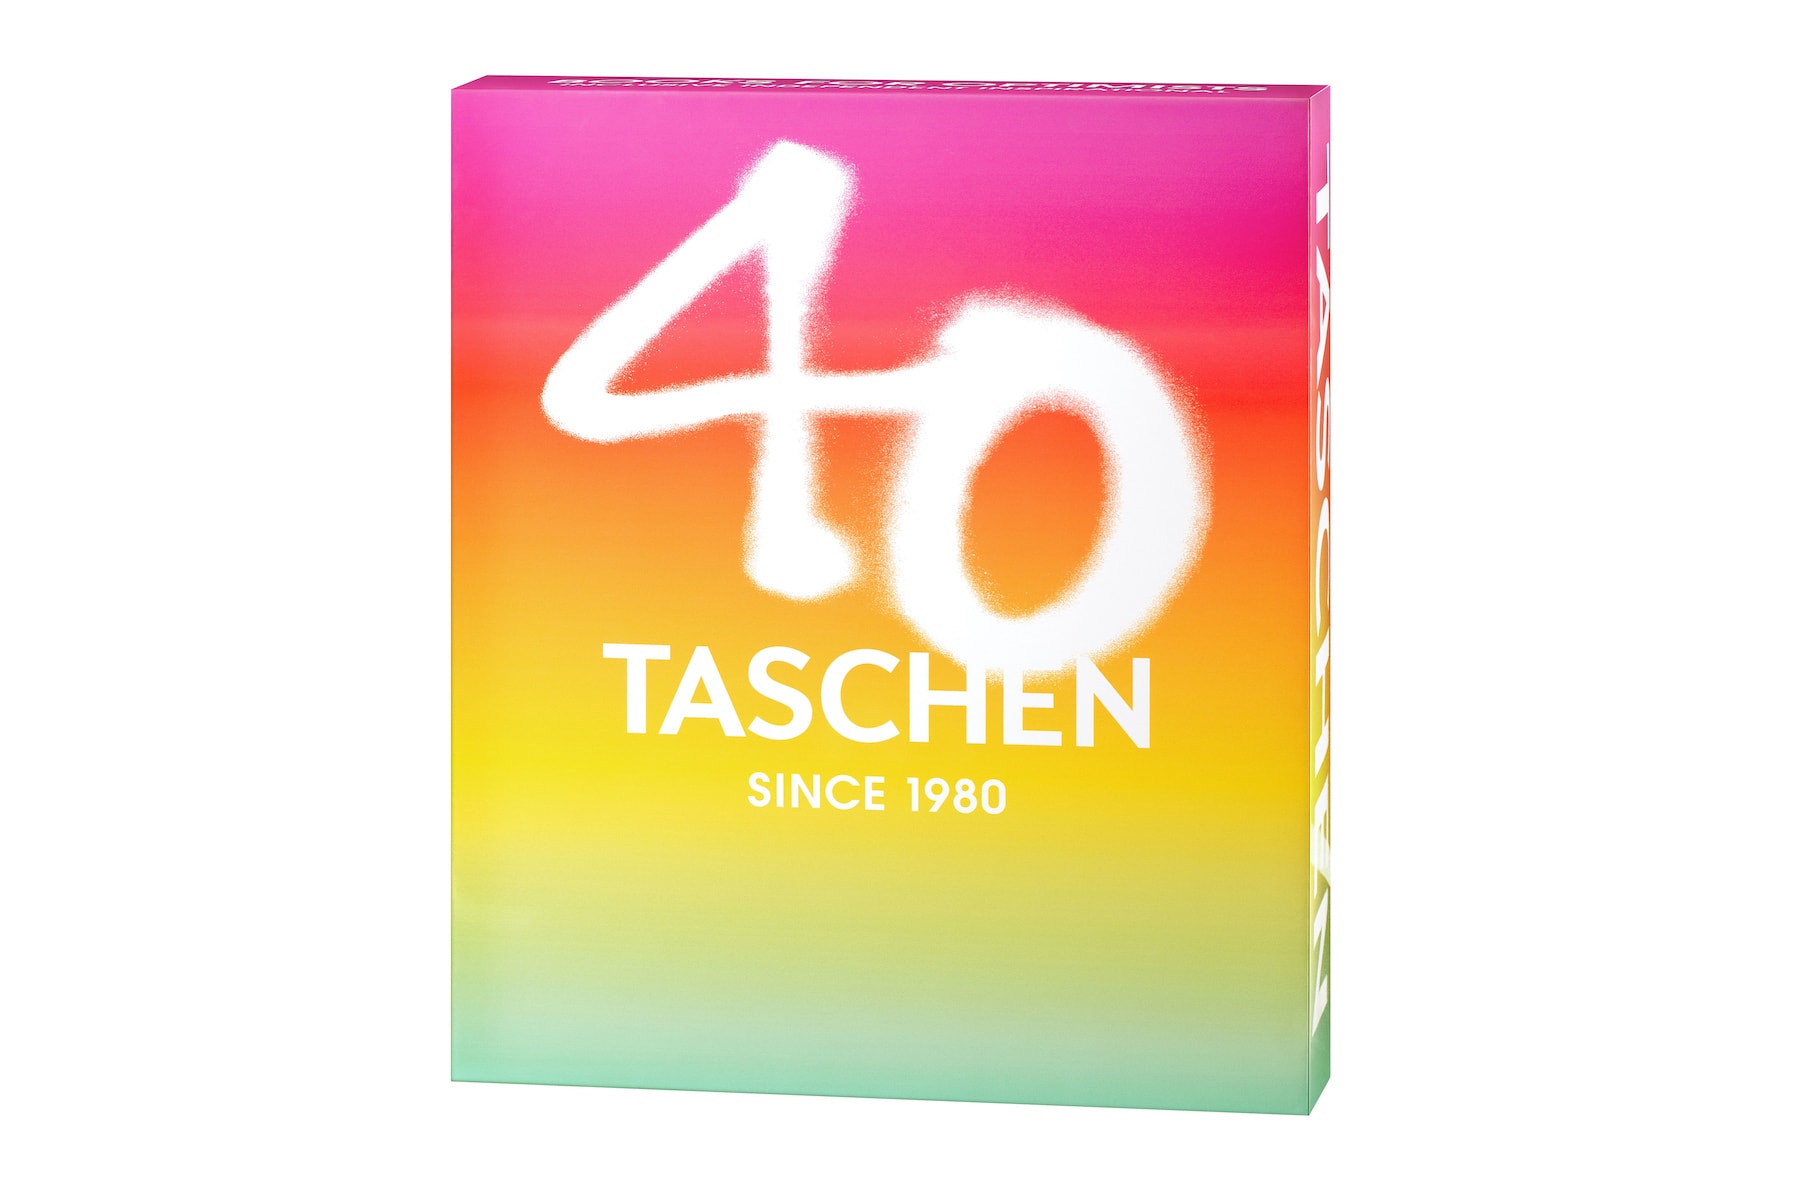 TASCHEN 特别推出 40 周年系列纪念版书籍